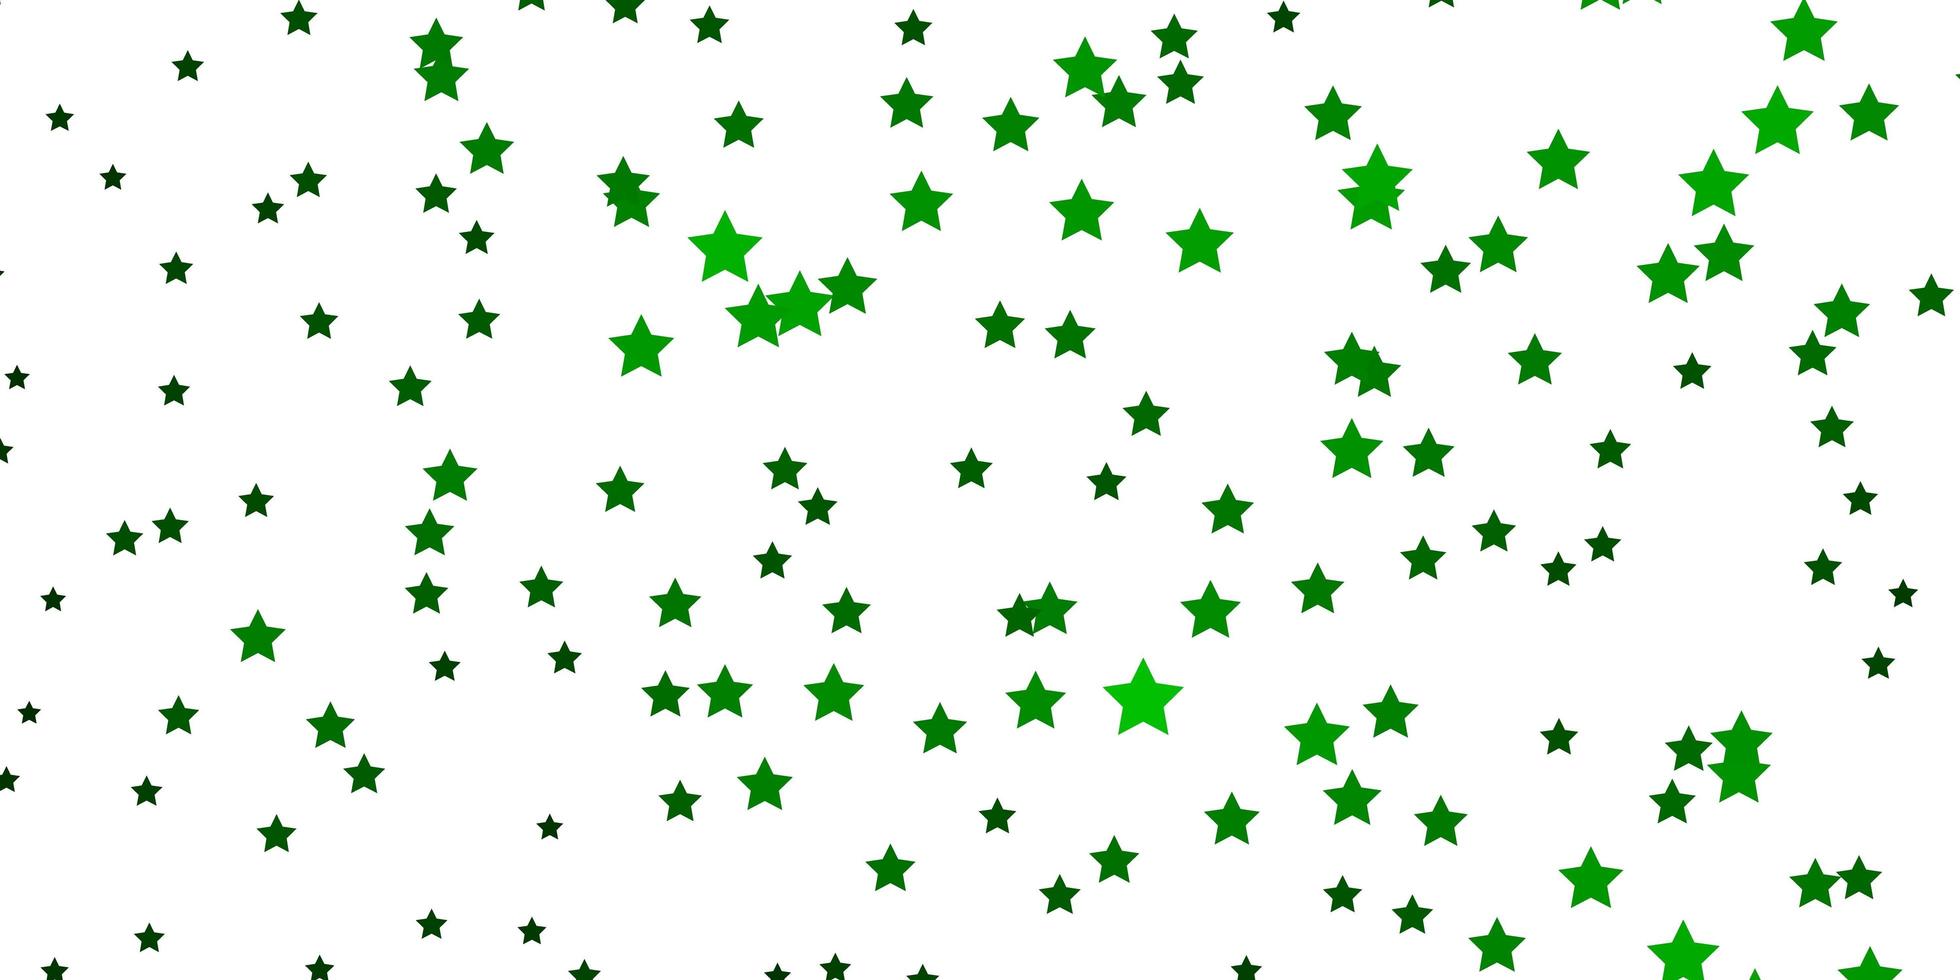 trama vettoriale verde scuro con bellissime stelle.